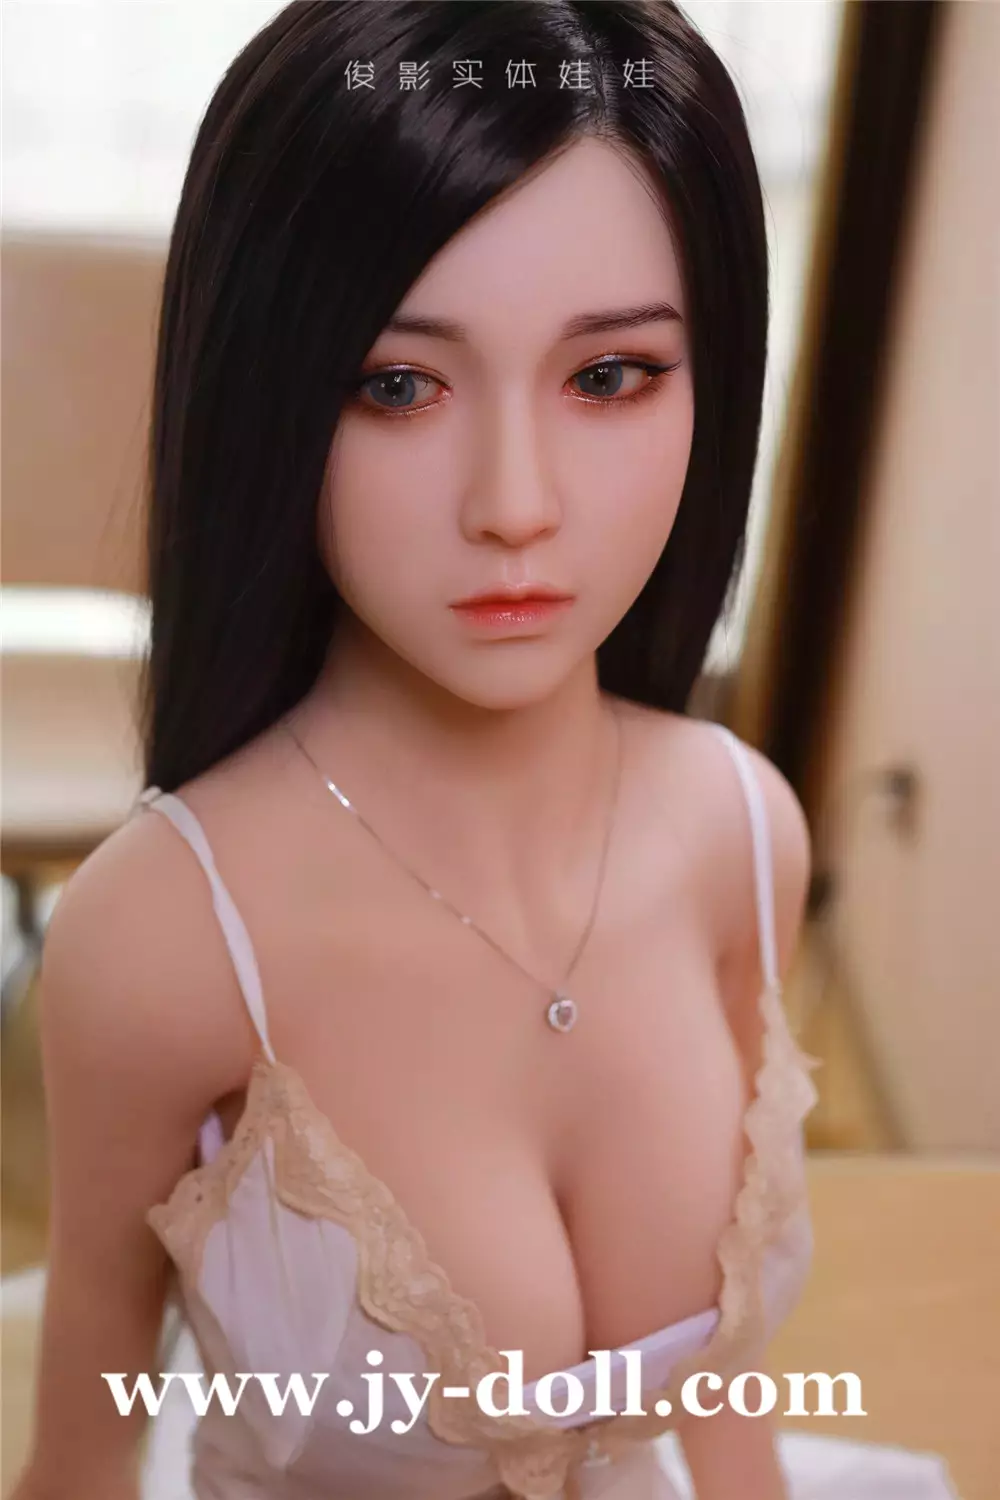 JY Doll 125cm BBW sex doll Xiao Qian (silicone head)